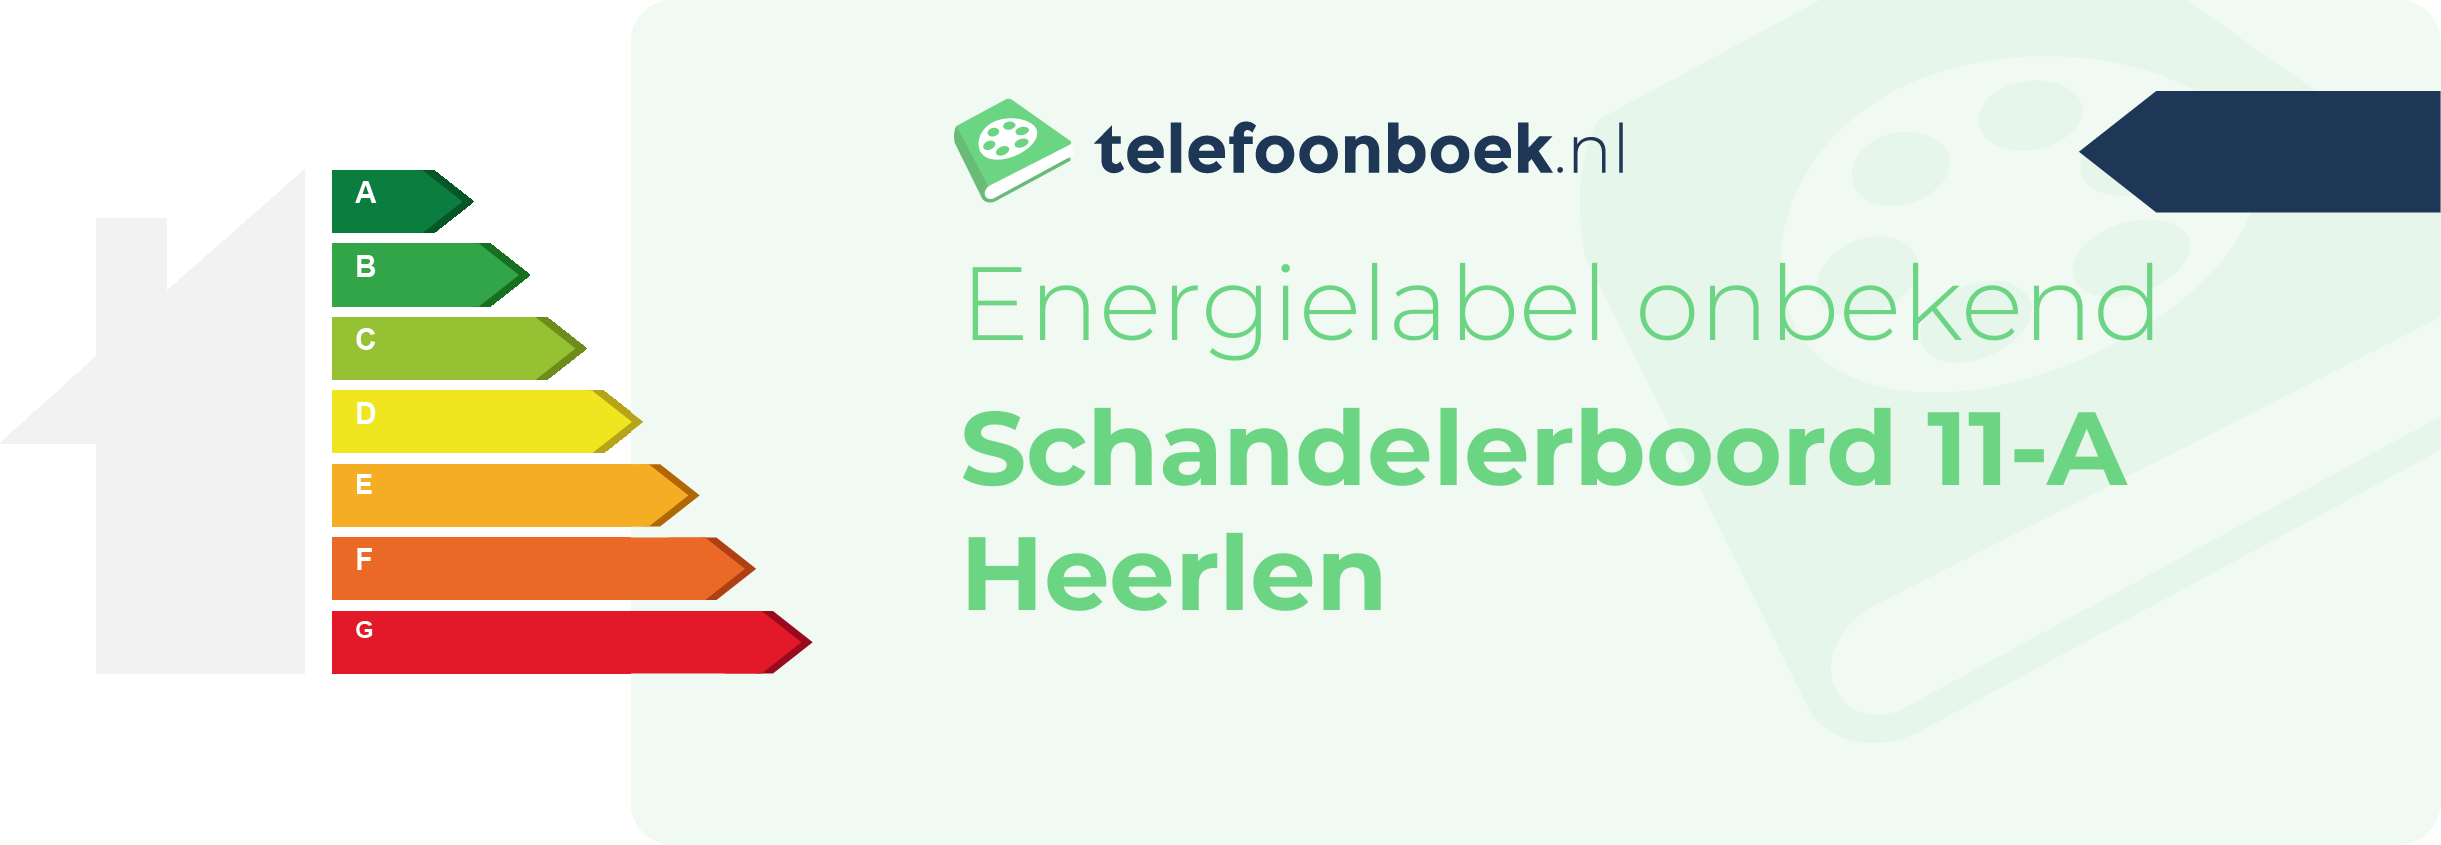 Energielabel Schandelerboord 11-A Heerlen